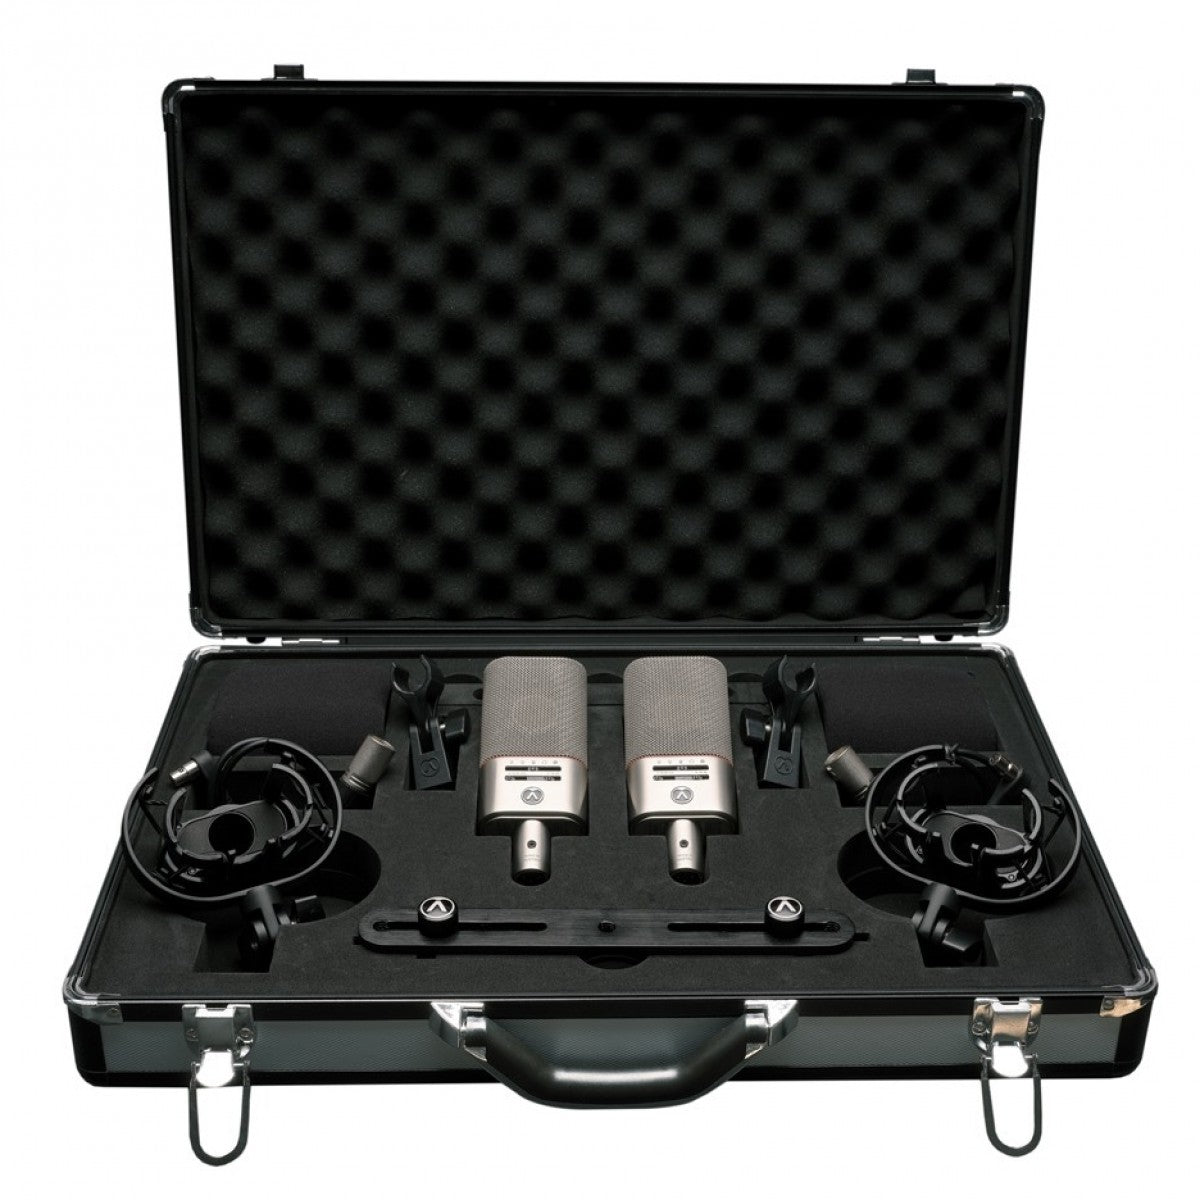 Austrian Audio OC818 Dual Set - Large-diaphragm Condenser Microphones